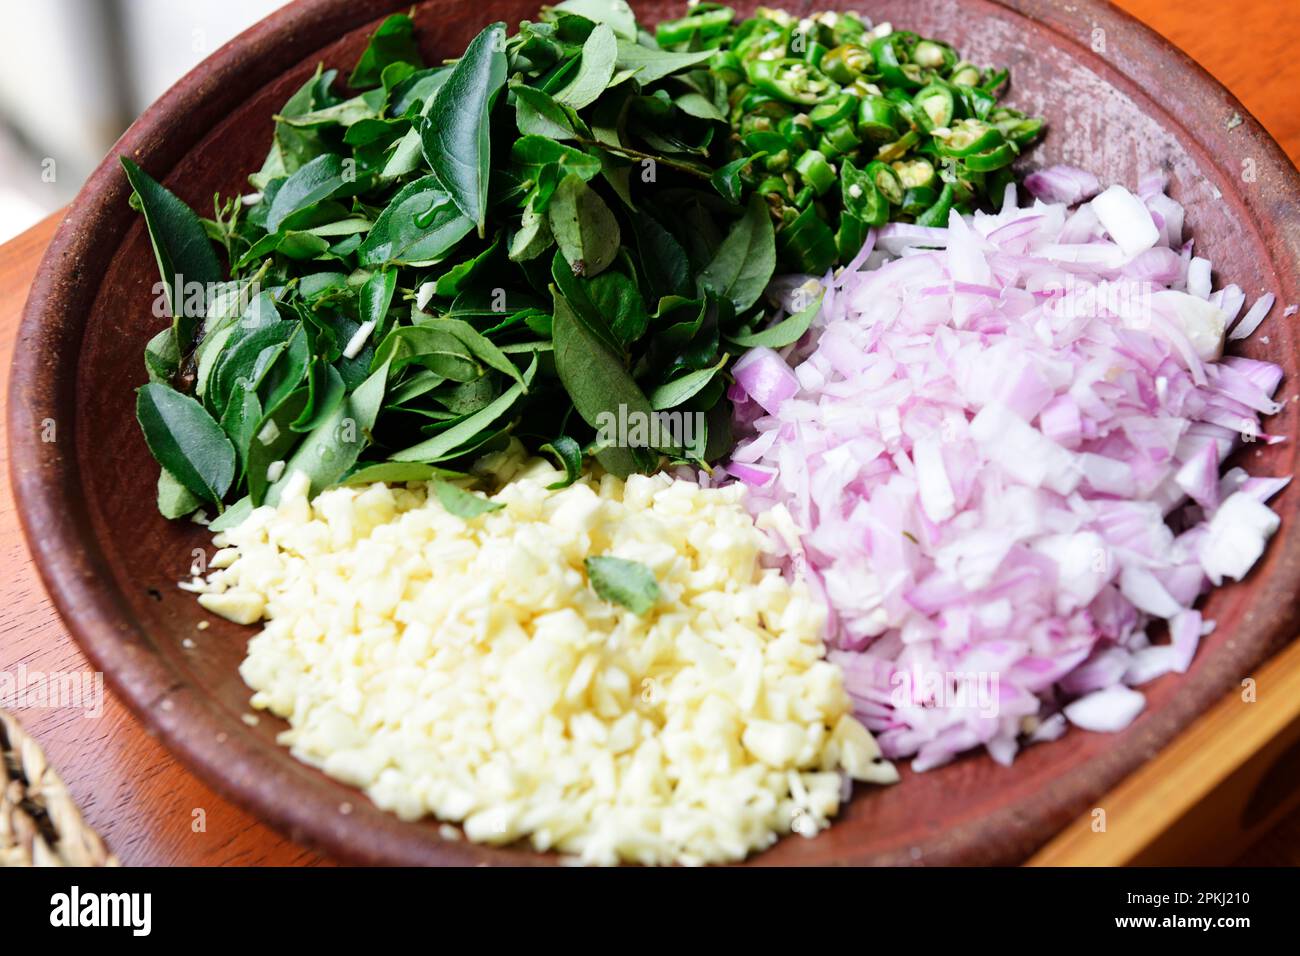 Oignon, ail, Chili, feuilles de curry, ingrédients pour la cuisine typique du Sri Lanka, curry, résidence de la Totupola, Kandy, Sri Lanka Banque D'Images